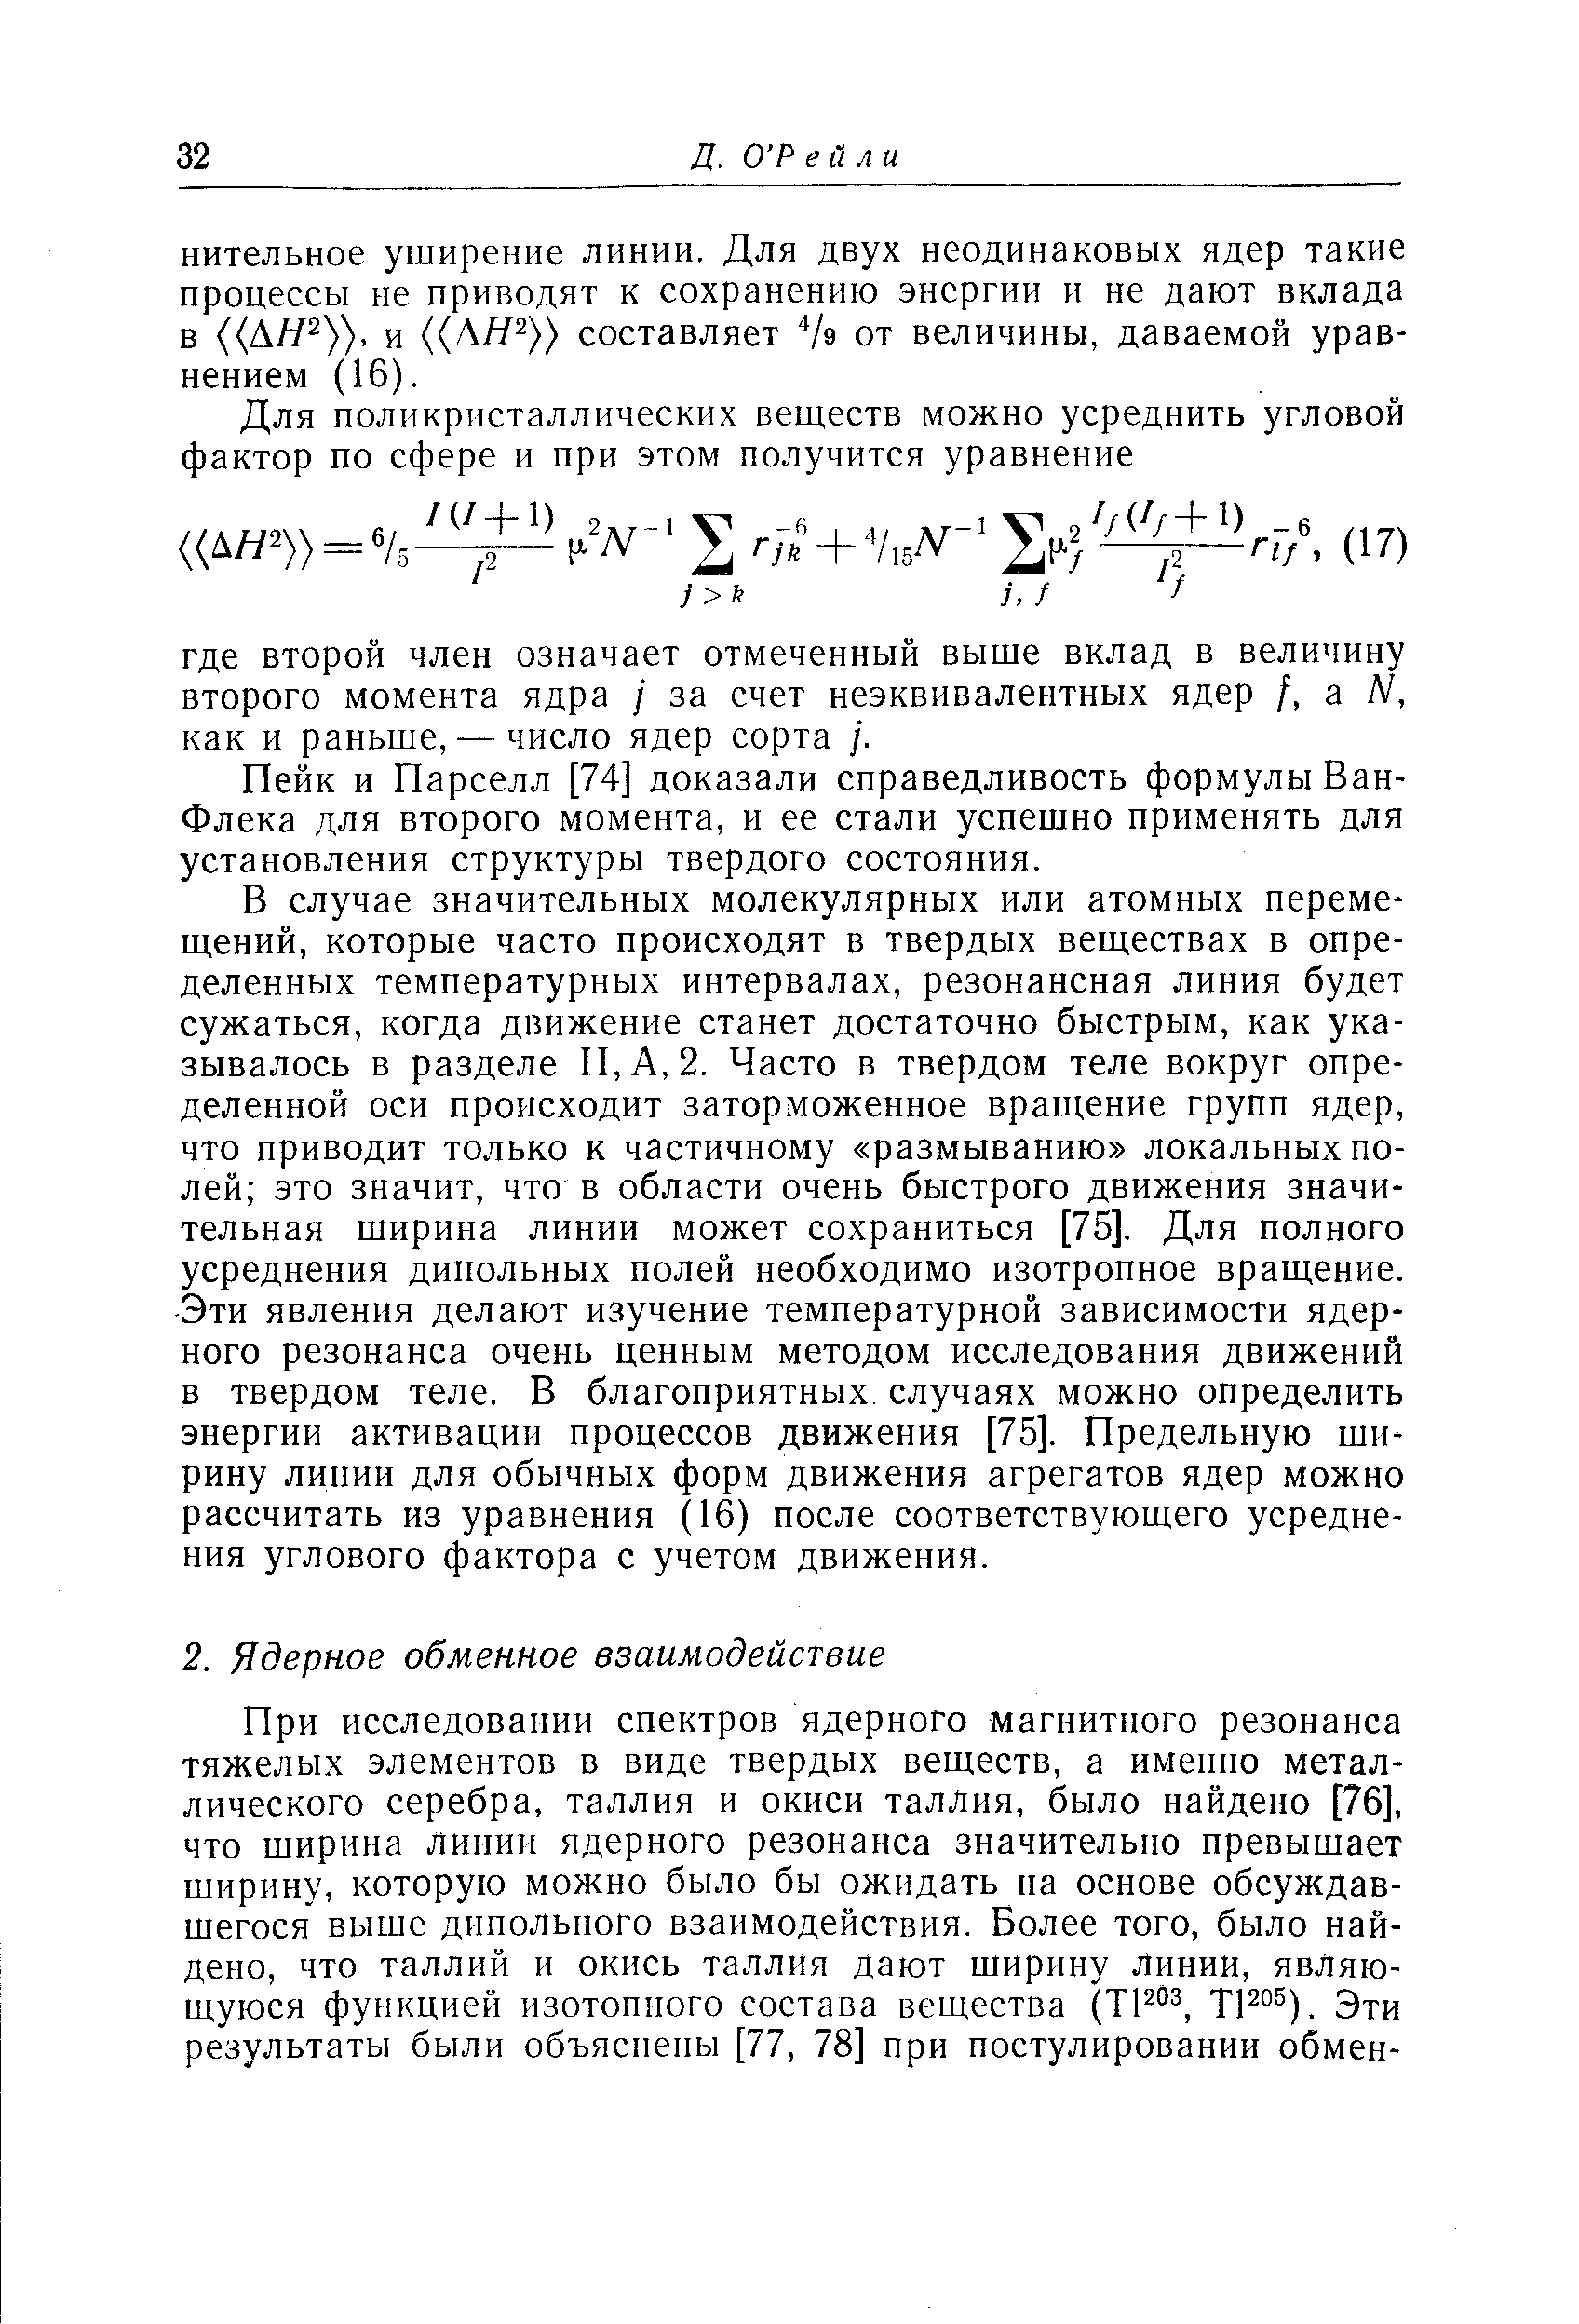 Пейк и Парселл [74] доказали справедливость формулы Ван-Флека для второго момента, и ее стали успешно применять для установления структуры твердого состояния.